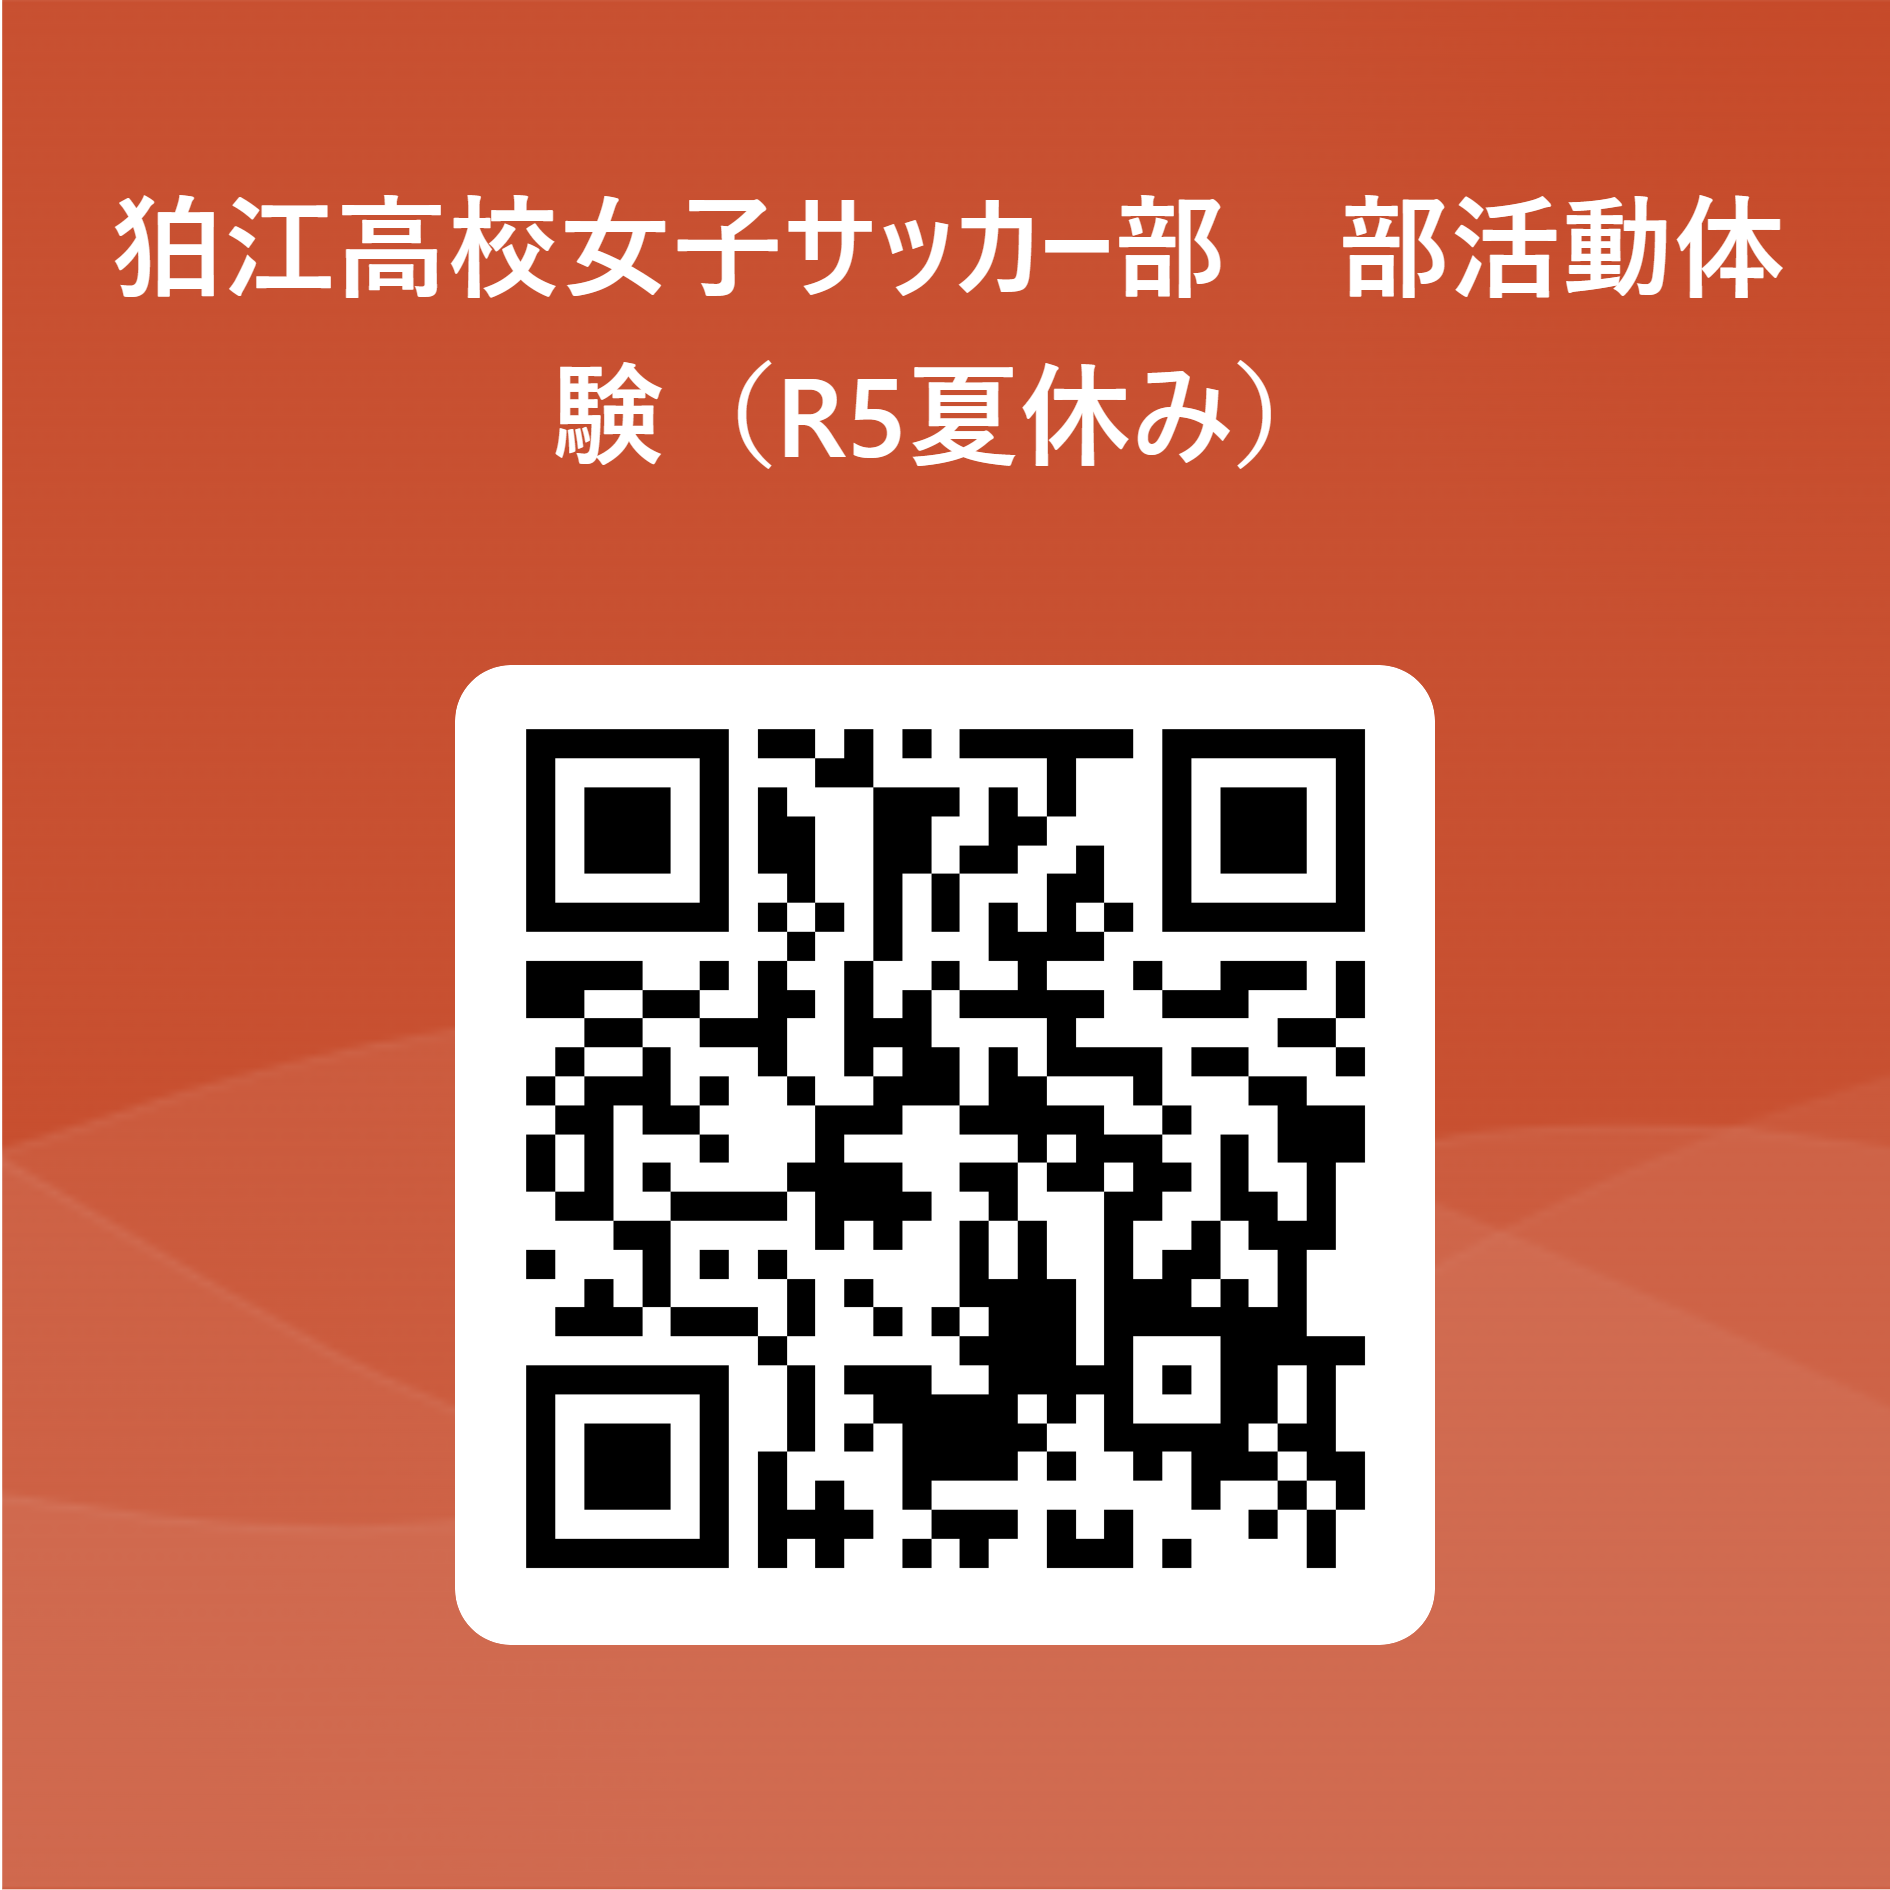 部活動体験(R5夏休み) QR コード